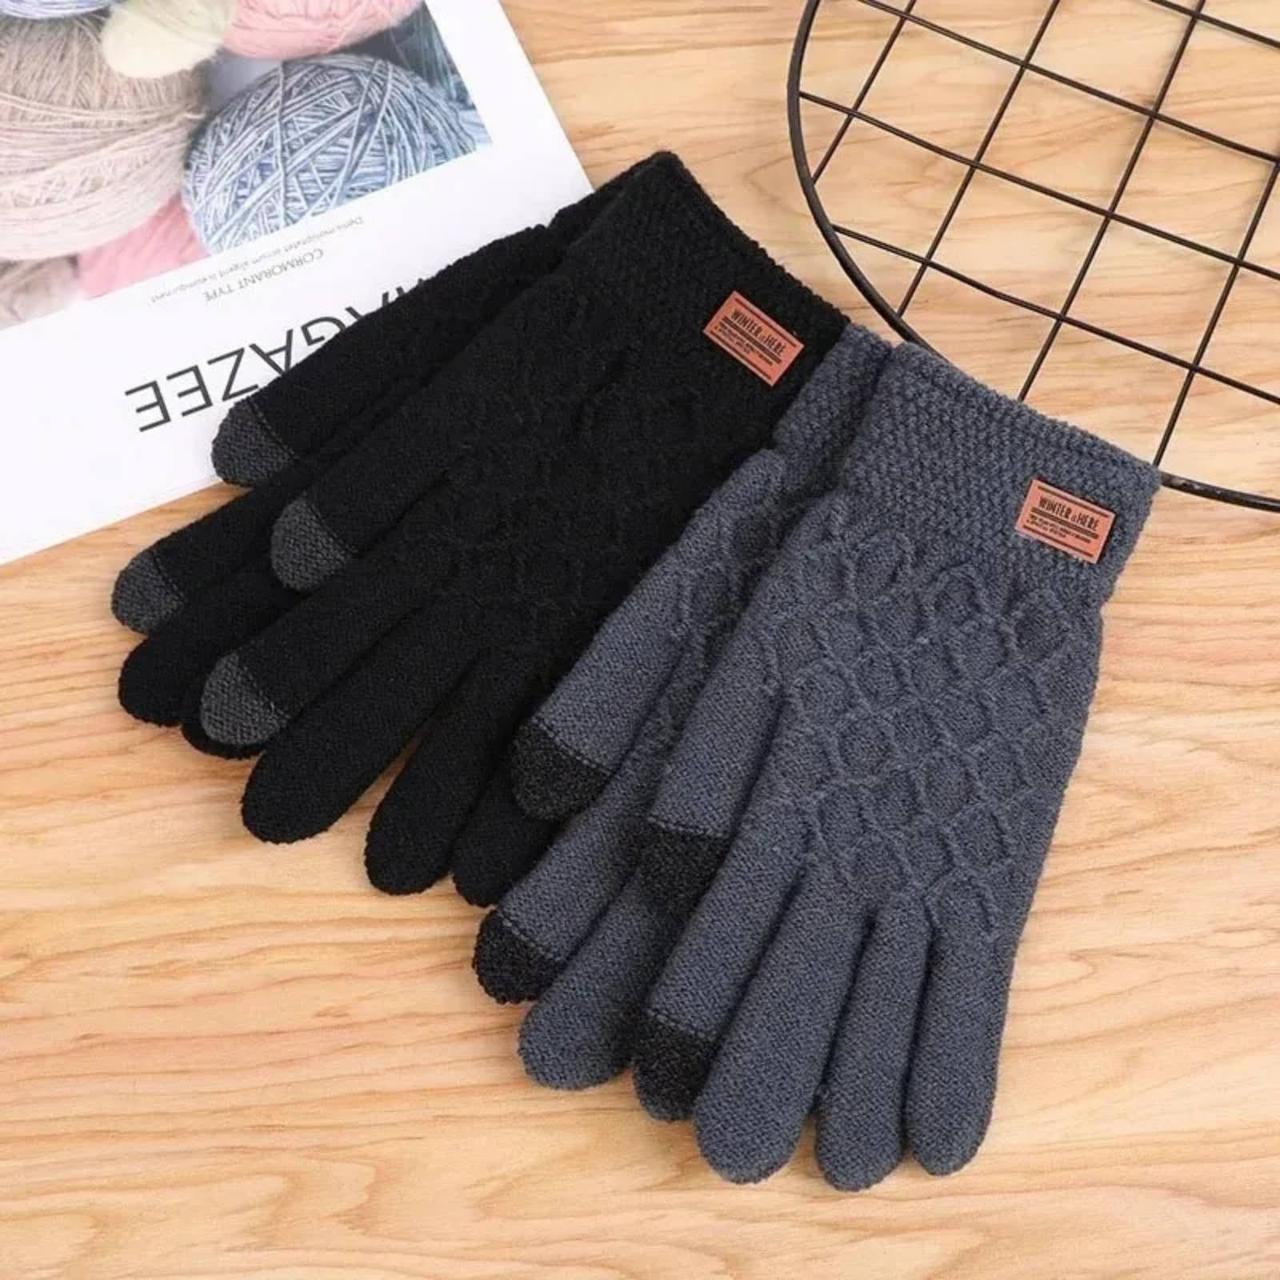 Чорні, щільні, в'язані, універсальні, зимові рукавички з сенсором для телефону. Чорні жіночі, чоловічі рукавички.